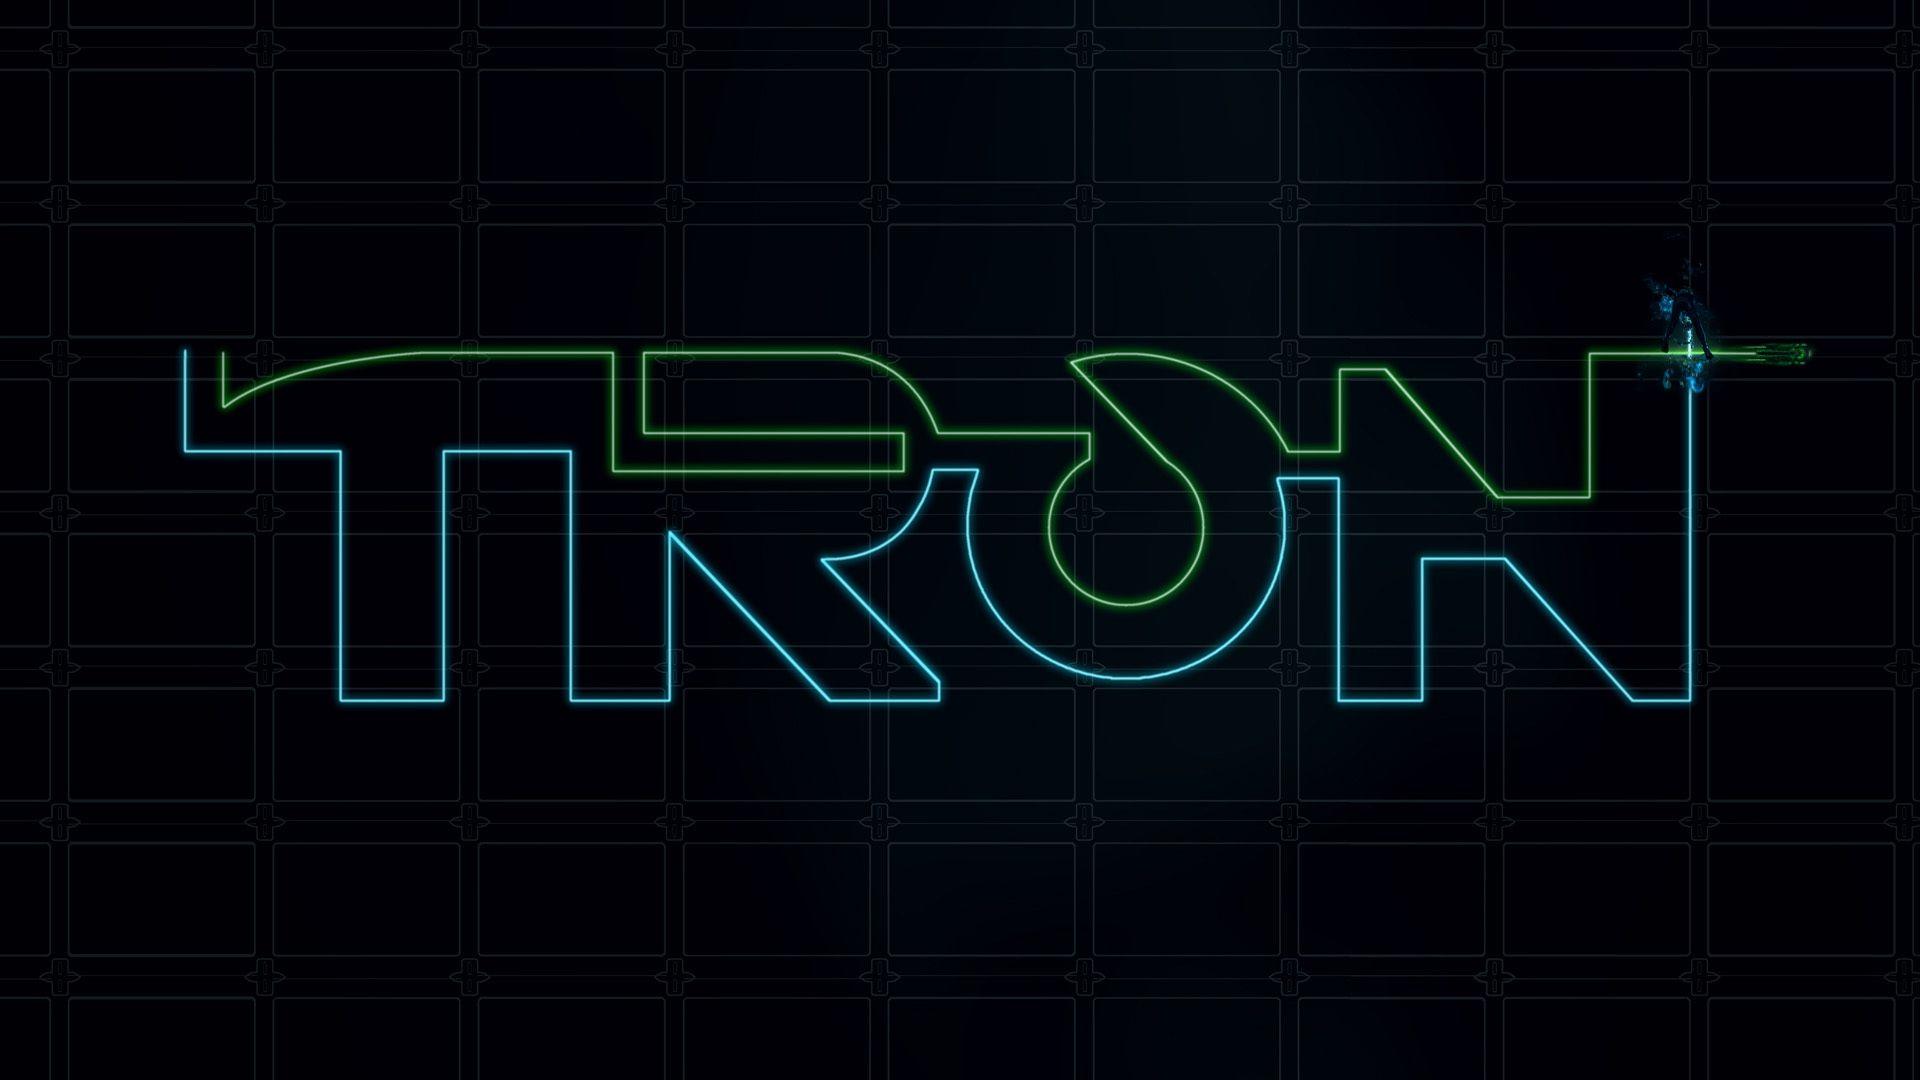 Tron Free Wallpaper: Tron Grid Wallpaper